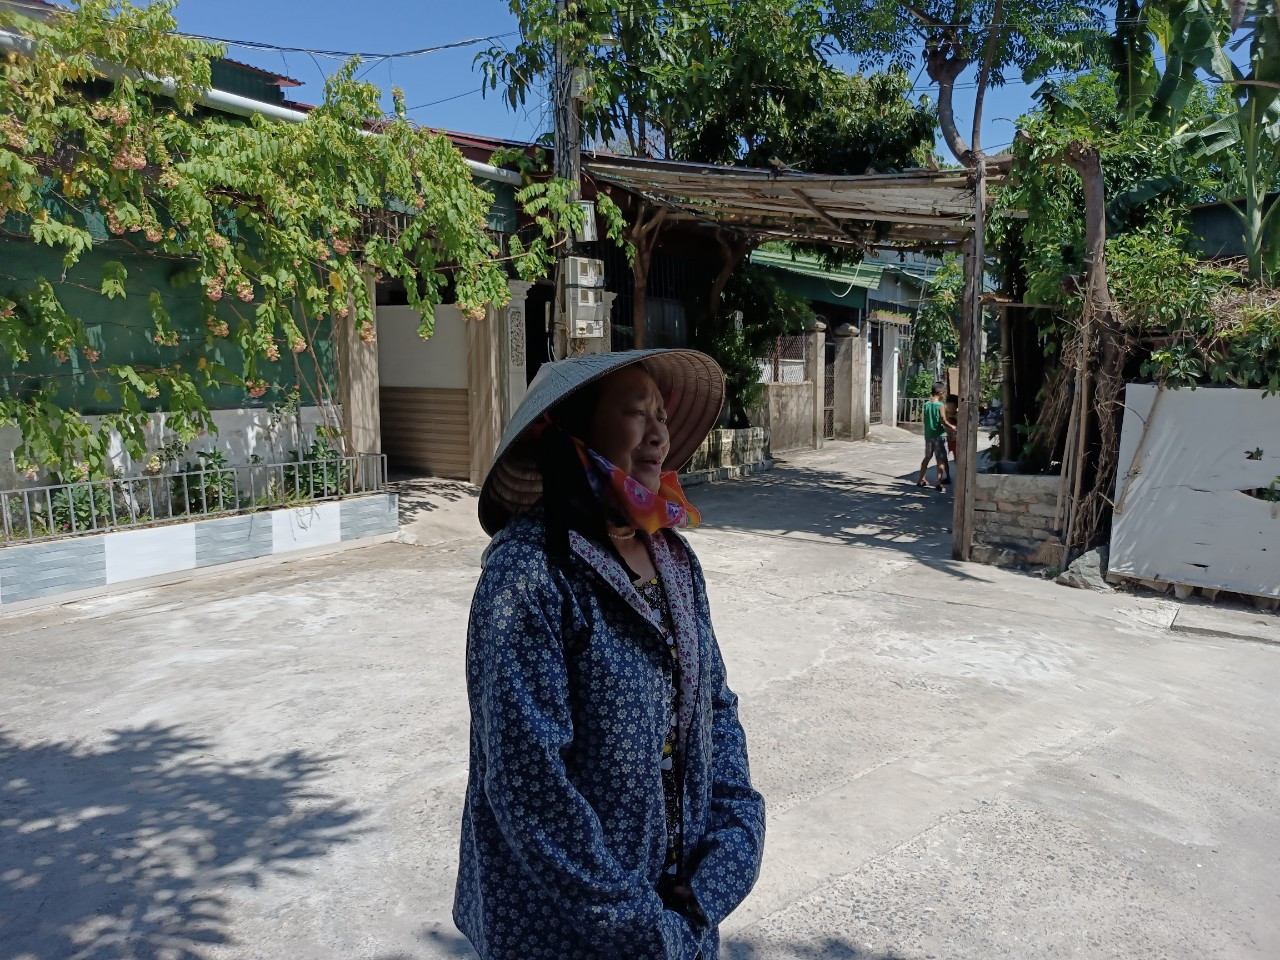 Bà Nguyễn Thị Thanh - tổ trưởng tổ 9, khối 11, phường Cửa Nam, cũng là một trong số 13 hộ dân đang sinh sống tại khu tập thể Công ty Sông Biển mong muốn sớm được các cấp chính quyền làm thủ tục cấp giấy CNQSDĐ đất